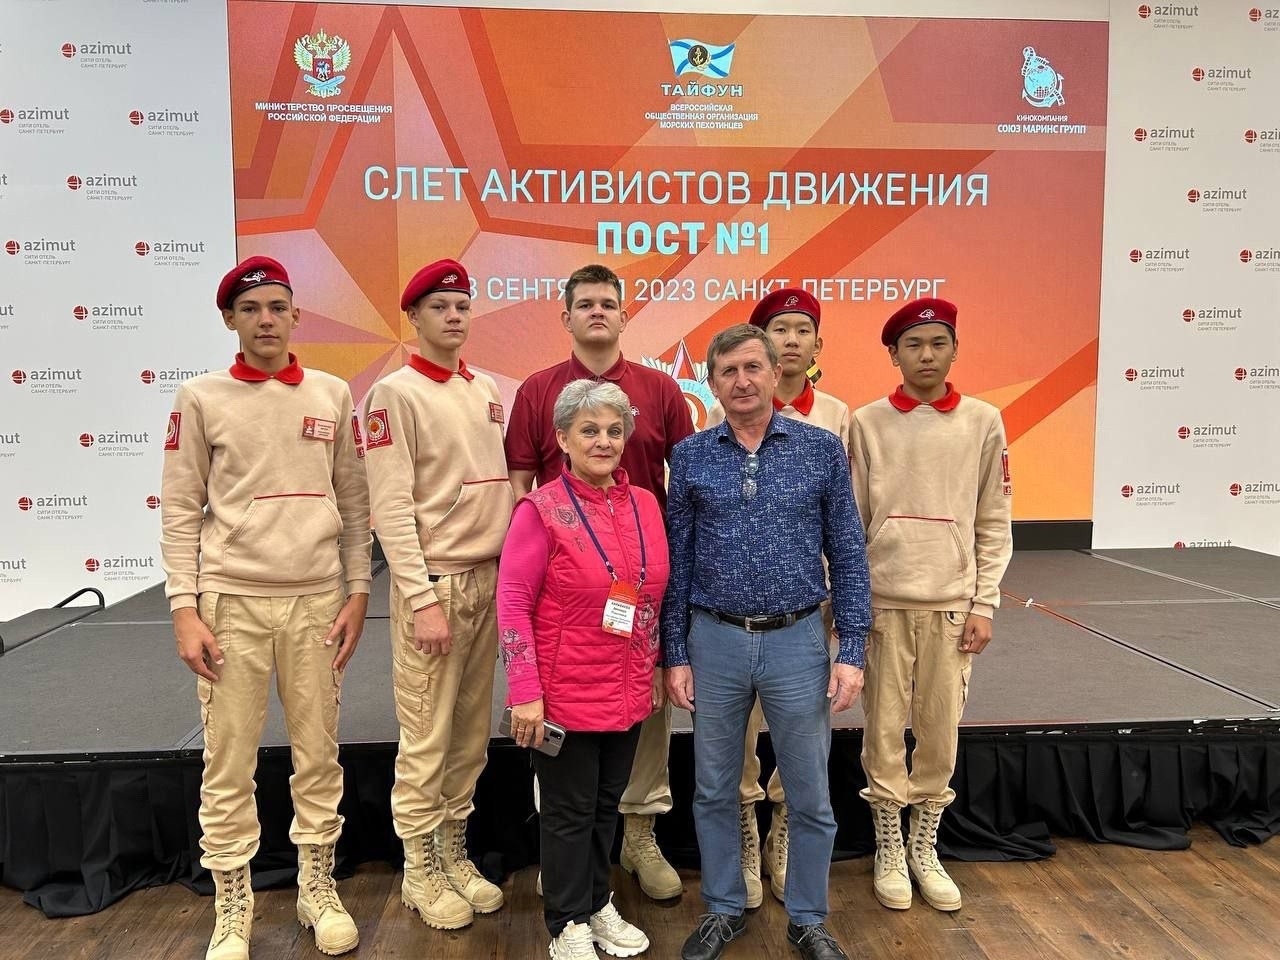 Школьники из Калмыкии приняли участие во Всероссийском слете активистов движения «Пост №1»